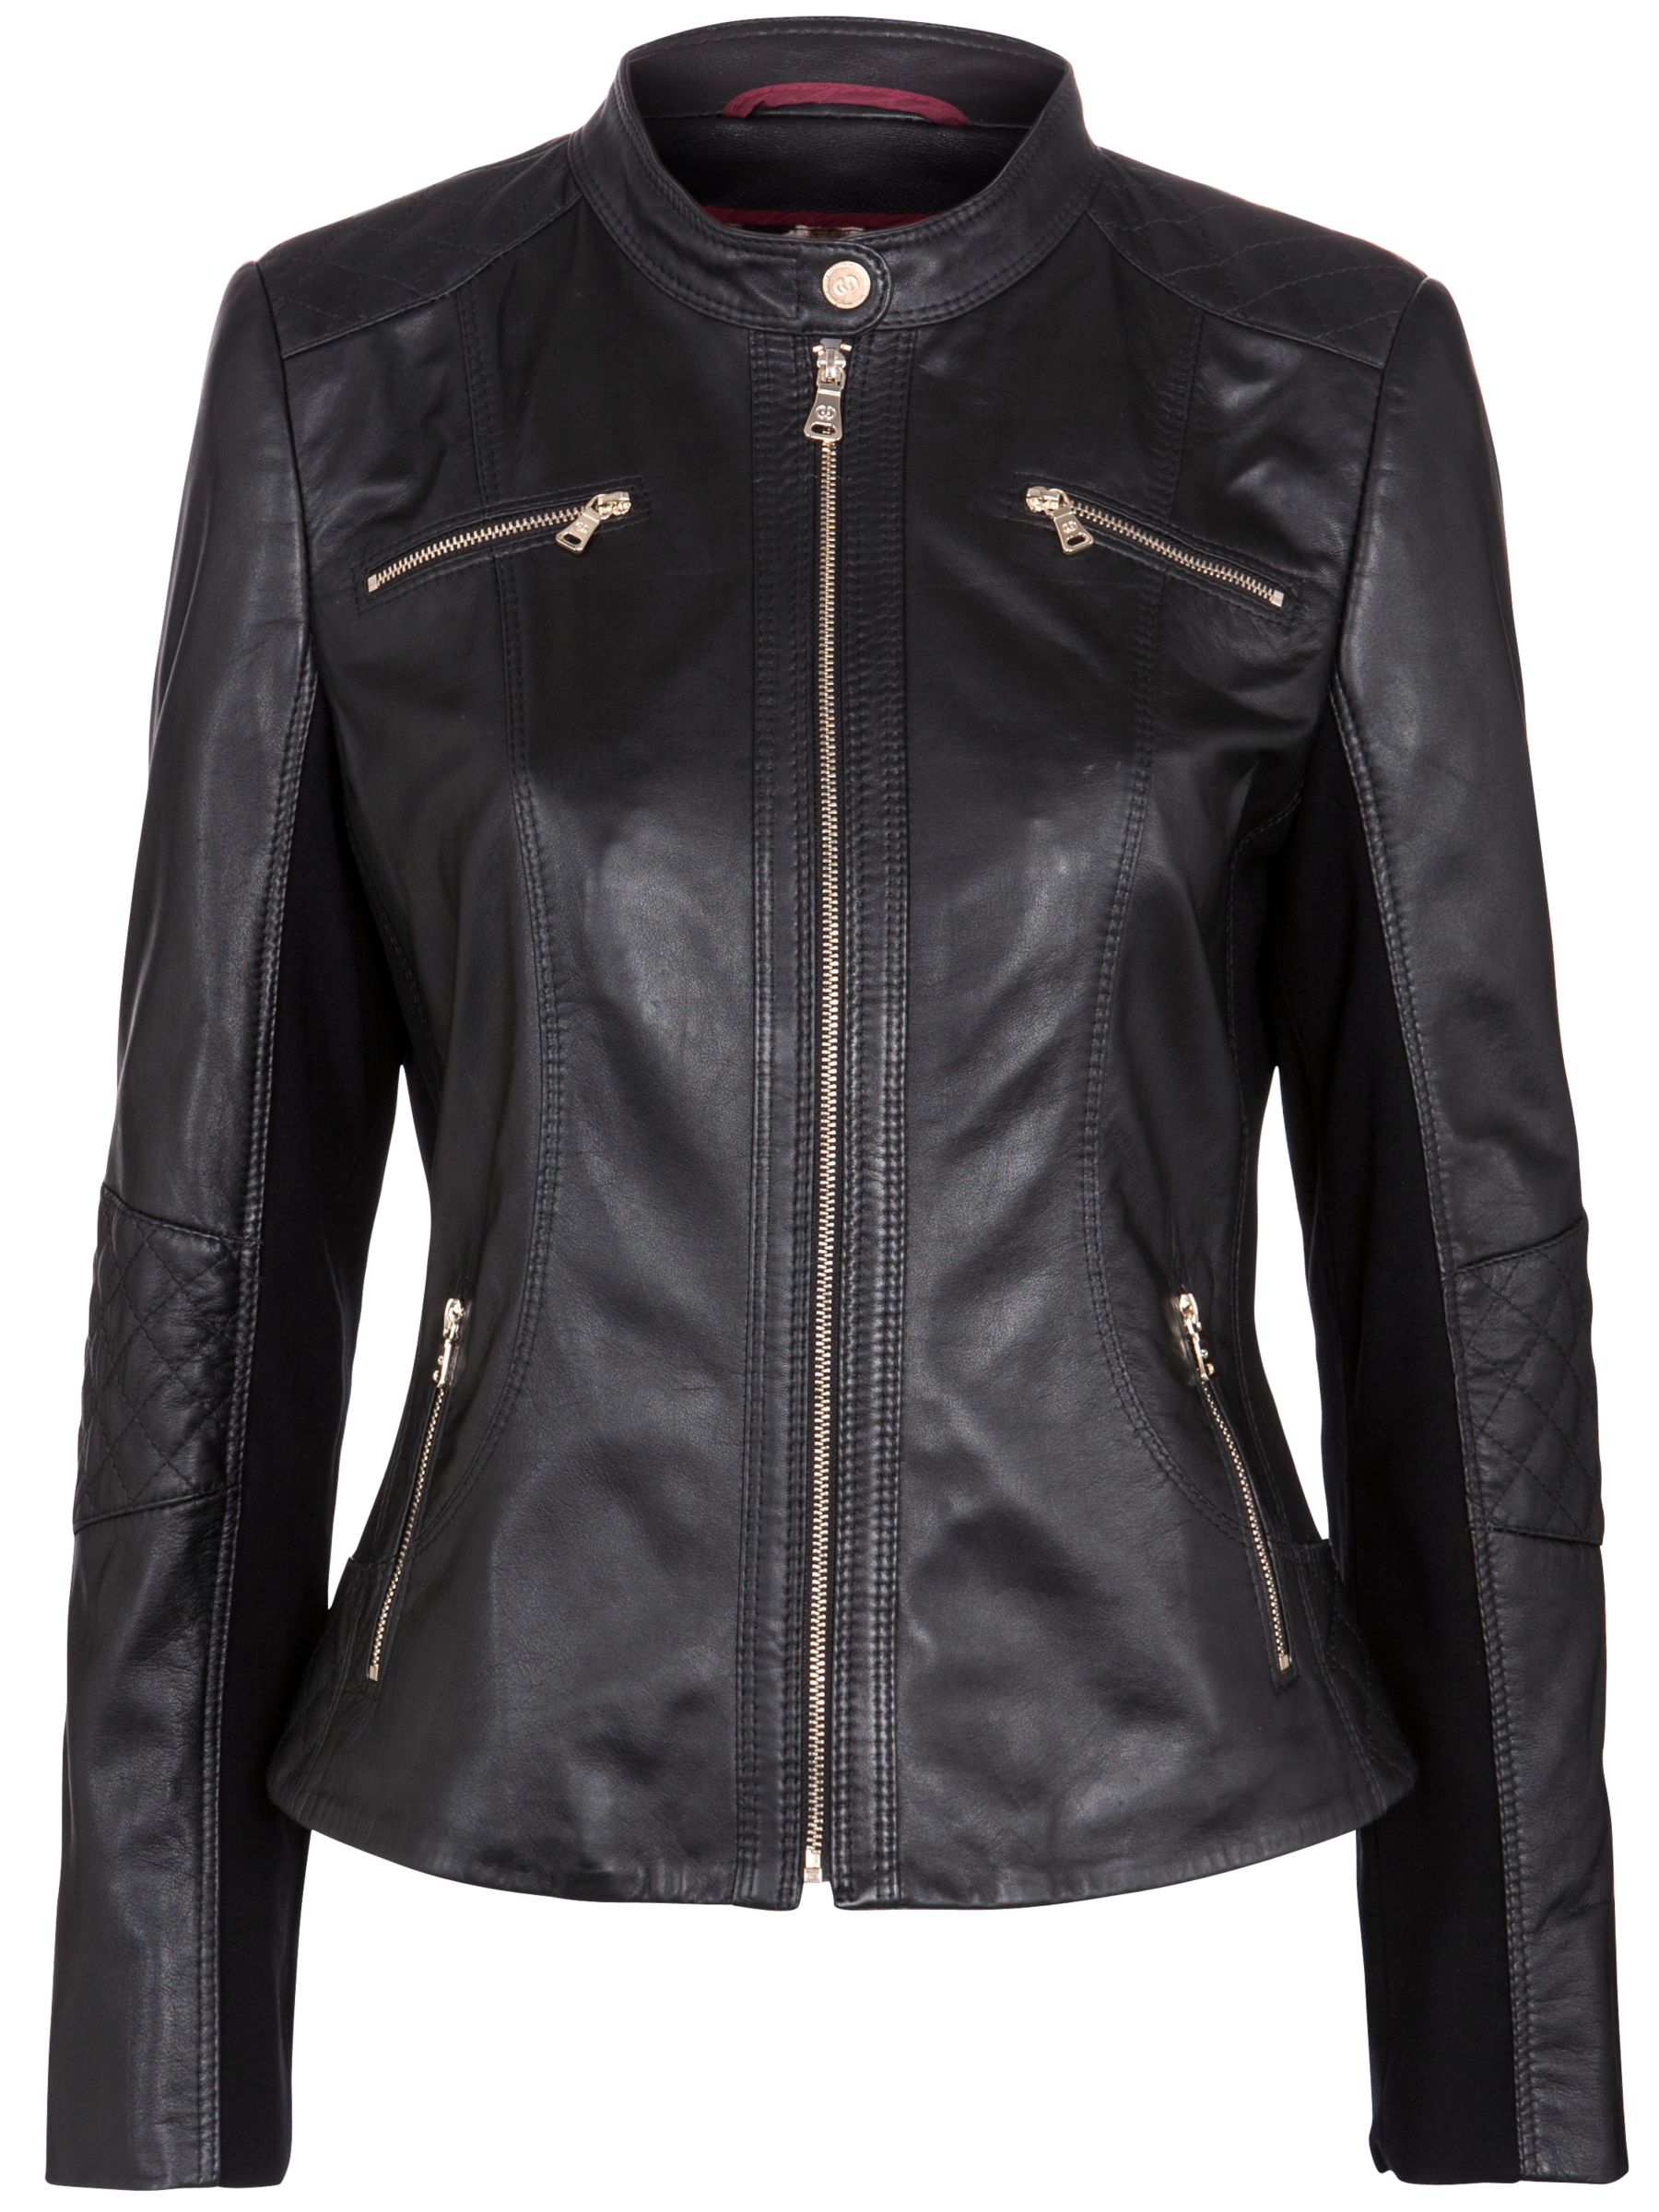 Gerry Weber Leather Jacket, Black